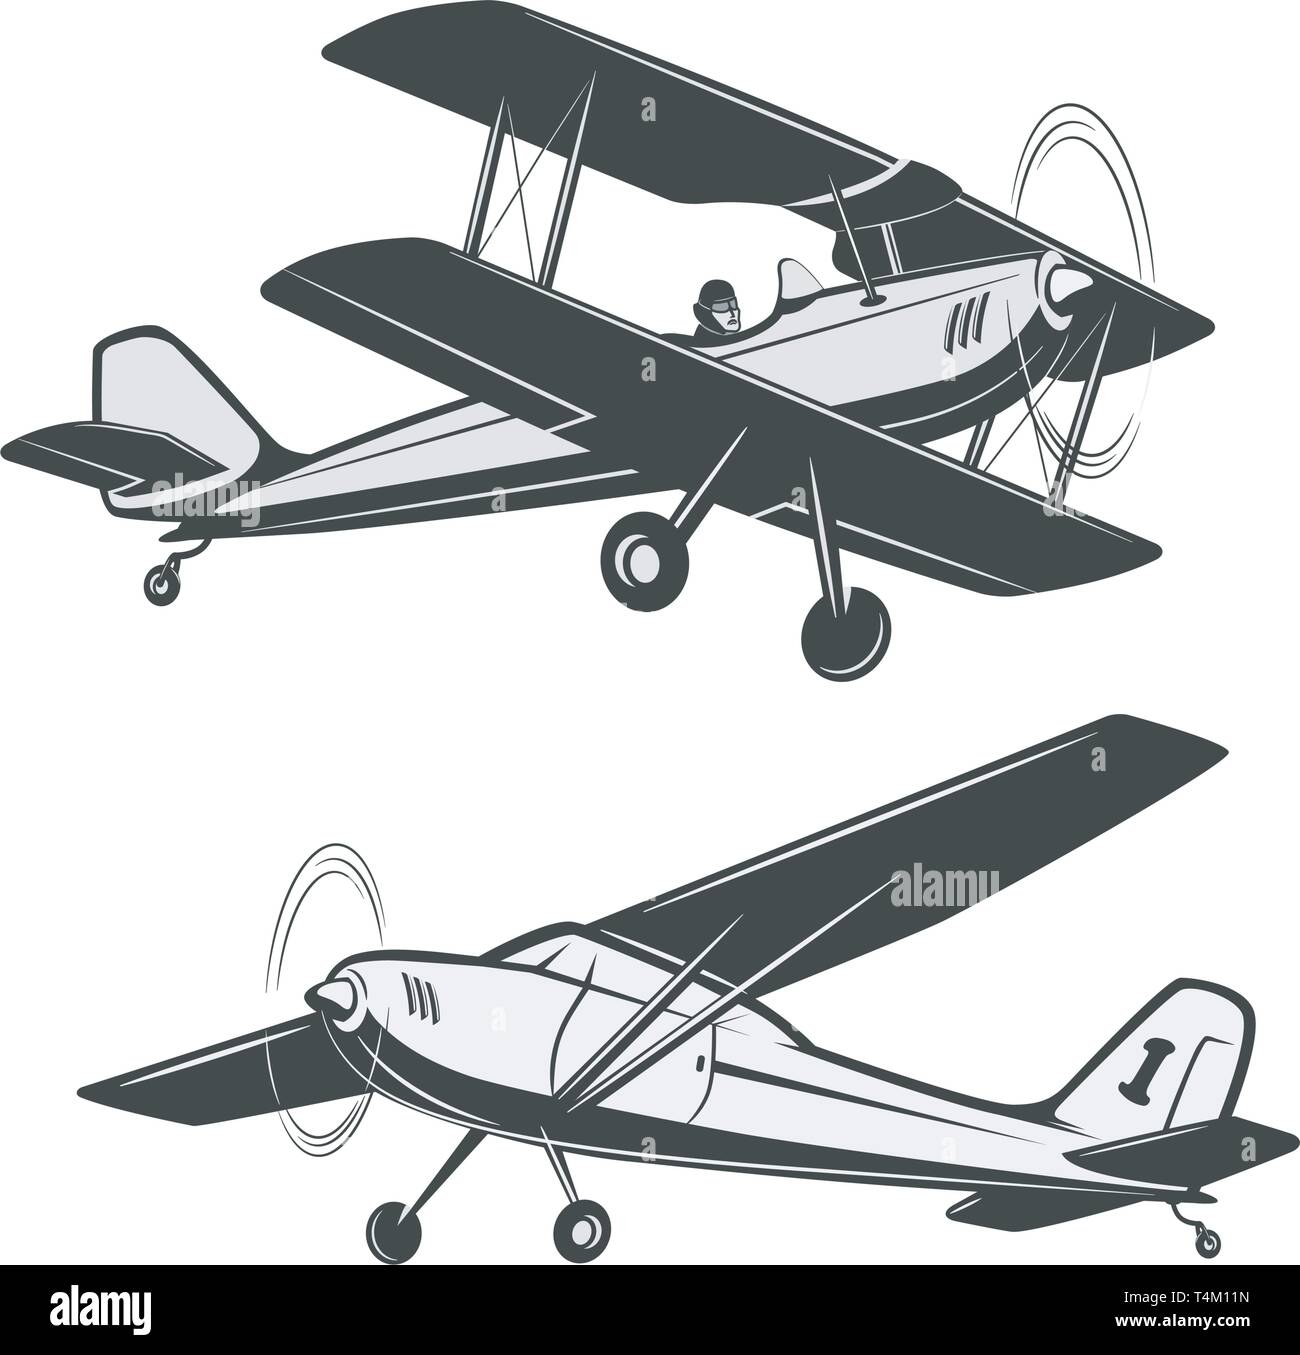 Zwei Arten von Vintage, kleine Flugzeuge Stock-Vektorgrafik - Alamy